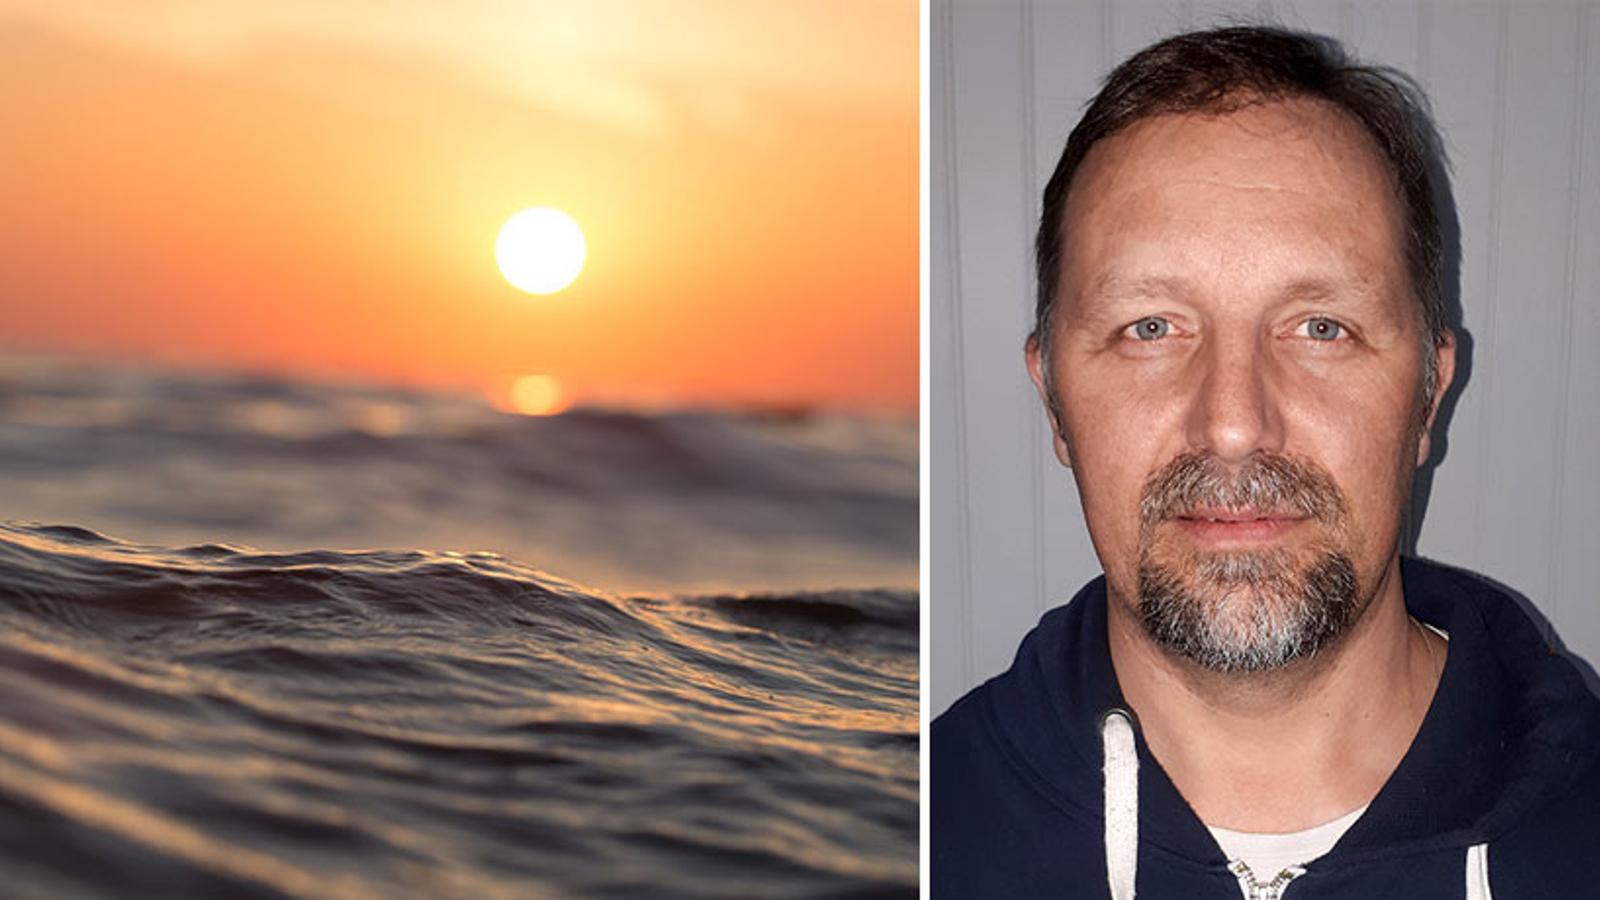 Till vänster: En våg på havet. I bakgrunden går solen ned. Till höger: Porträttbild av Robert Lindgren som ler mot kameran.